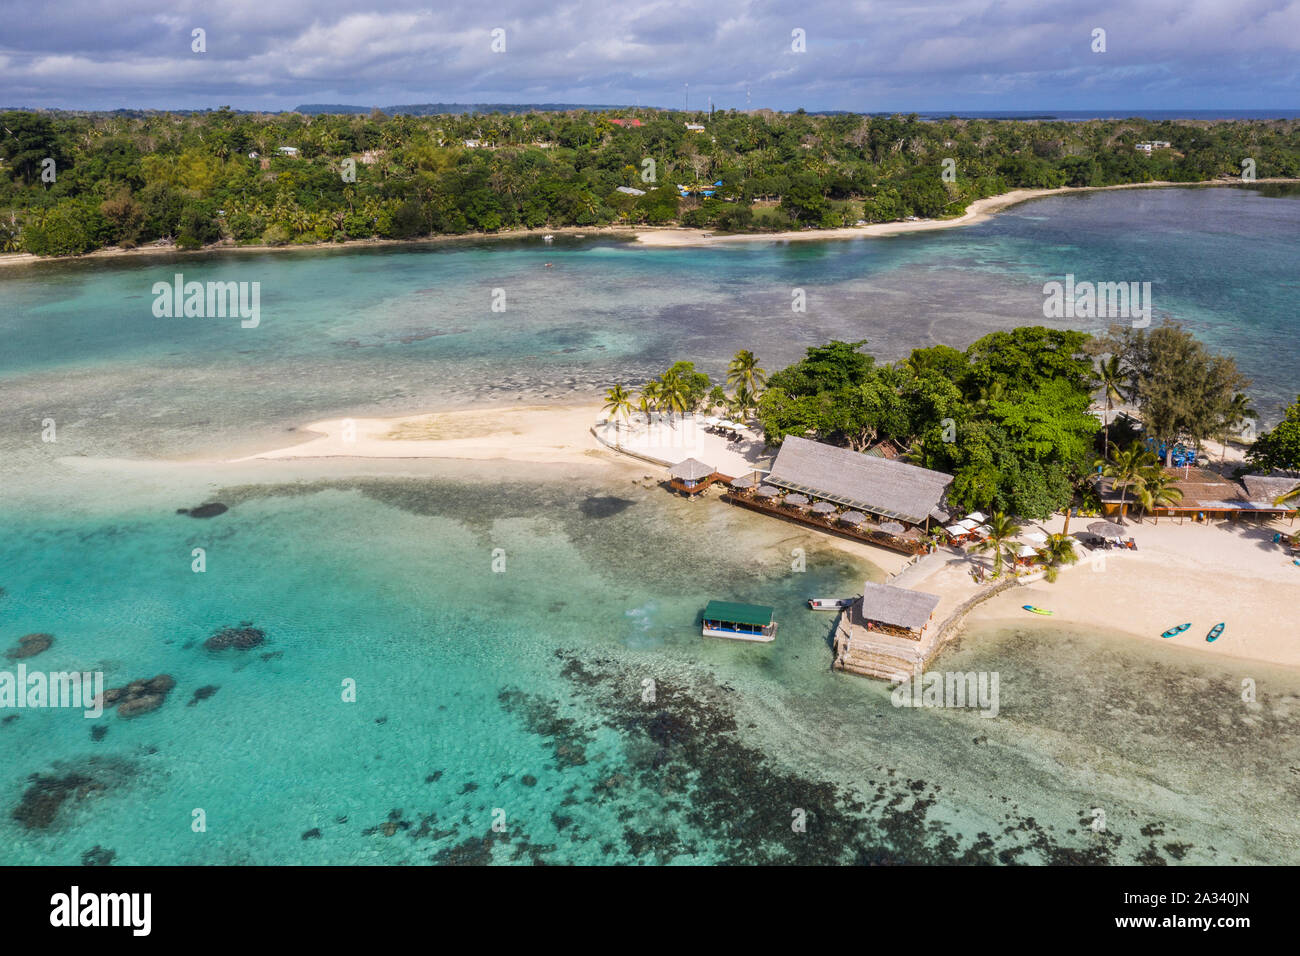 Luftaufnahme des idyllischen Erakor Island in der Bucht von Port Vila, Vanuatu Hauptstadt im Pazifischen Ozean Stockfoto